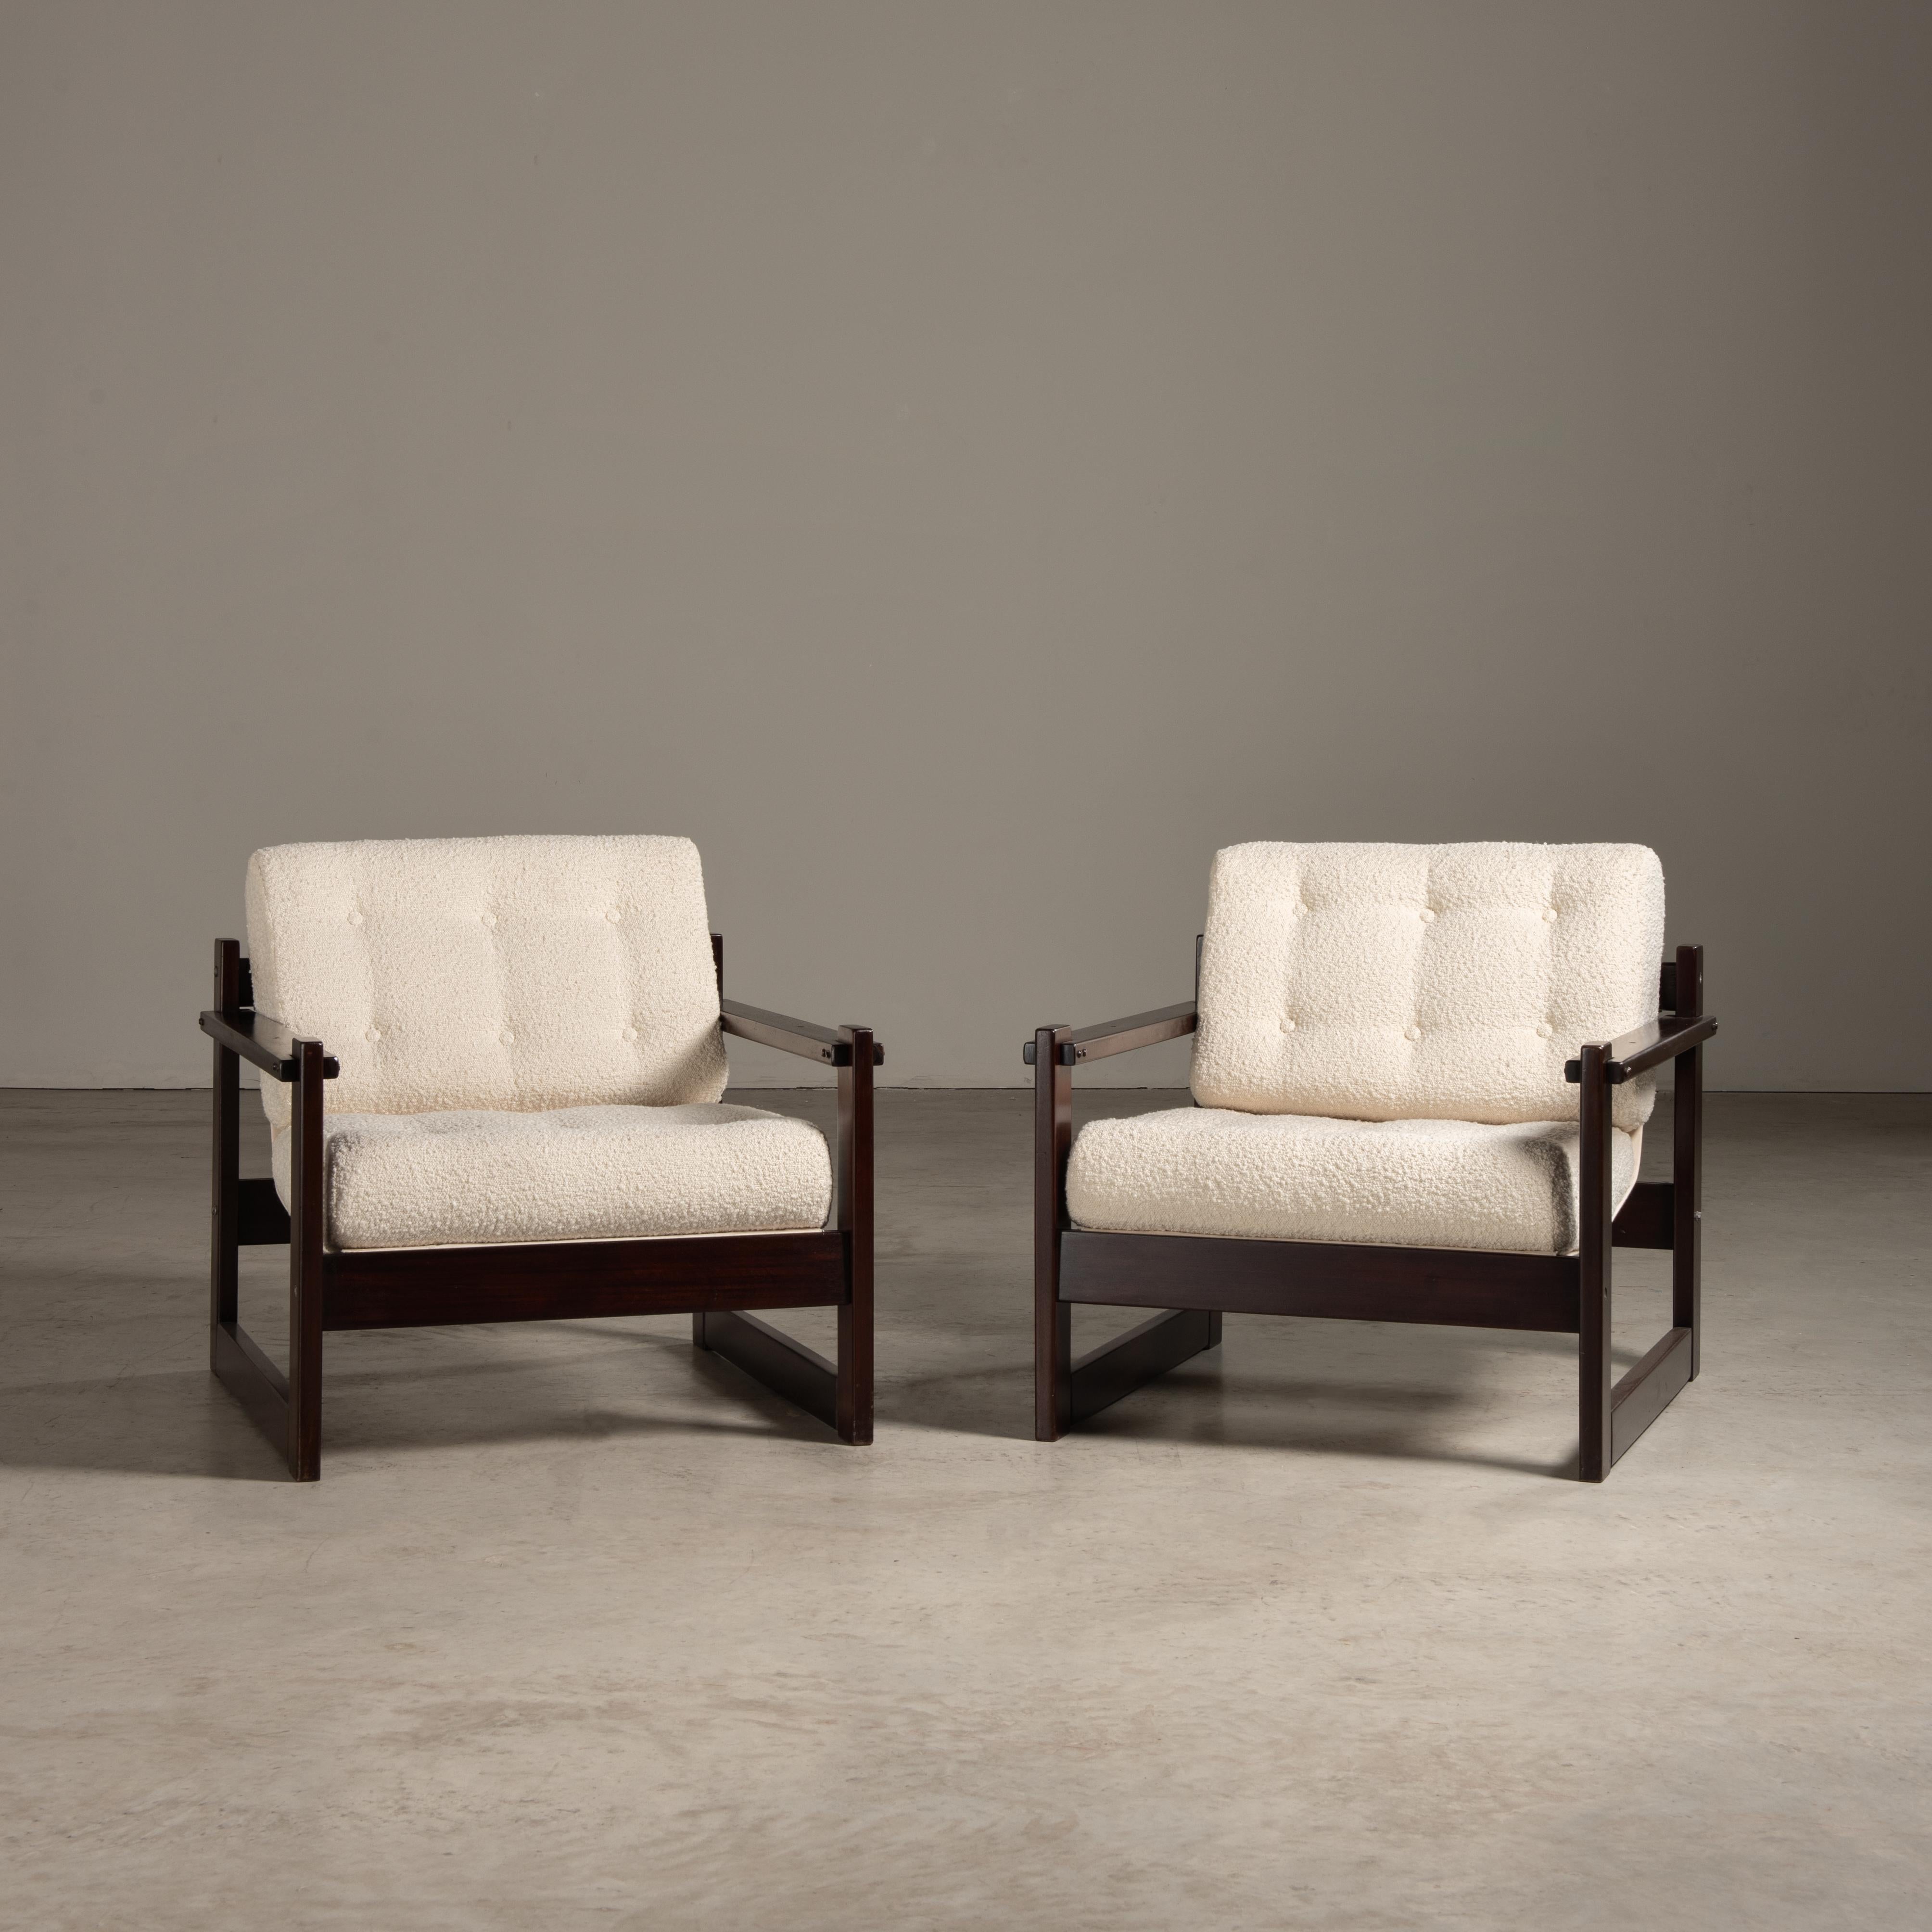 La chaise longue S1 est un exemple distinctif du travail du designer brésilien Percival Lafer, célèbre pour son utilisation innovante des matériaux locaux et des principes de conception modernes qui ont caractérisé le design des meubles brésiliens